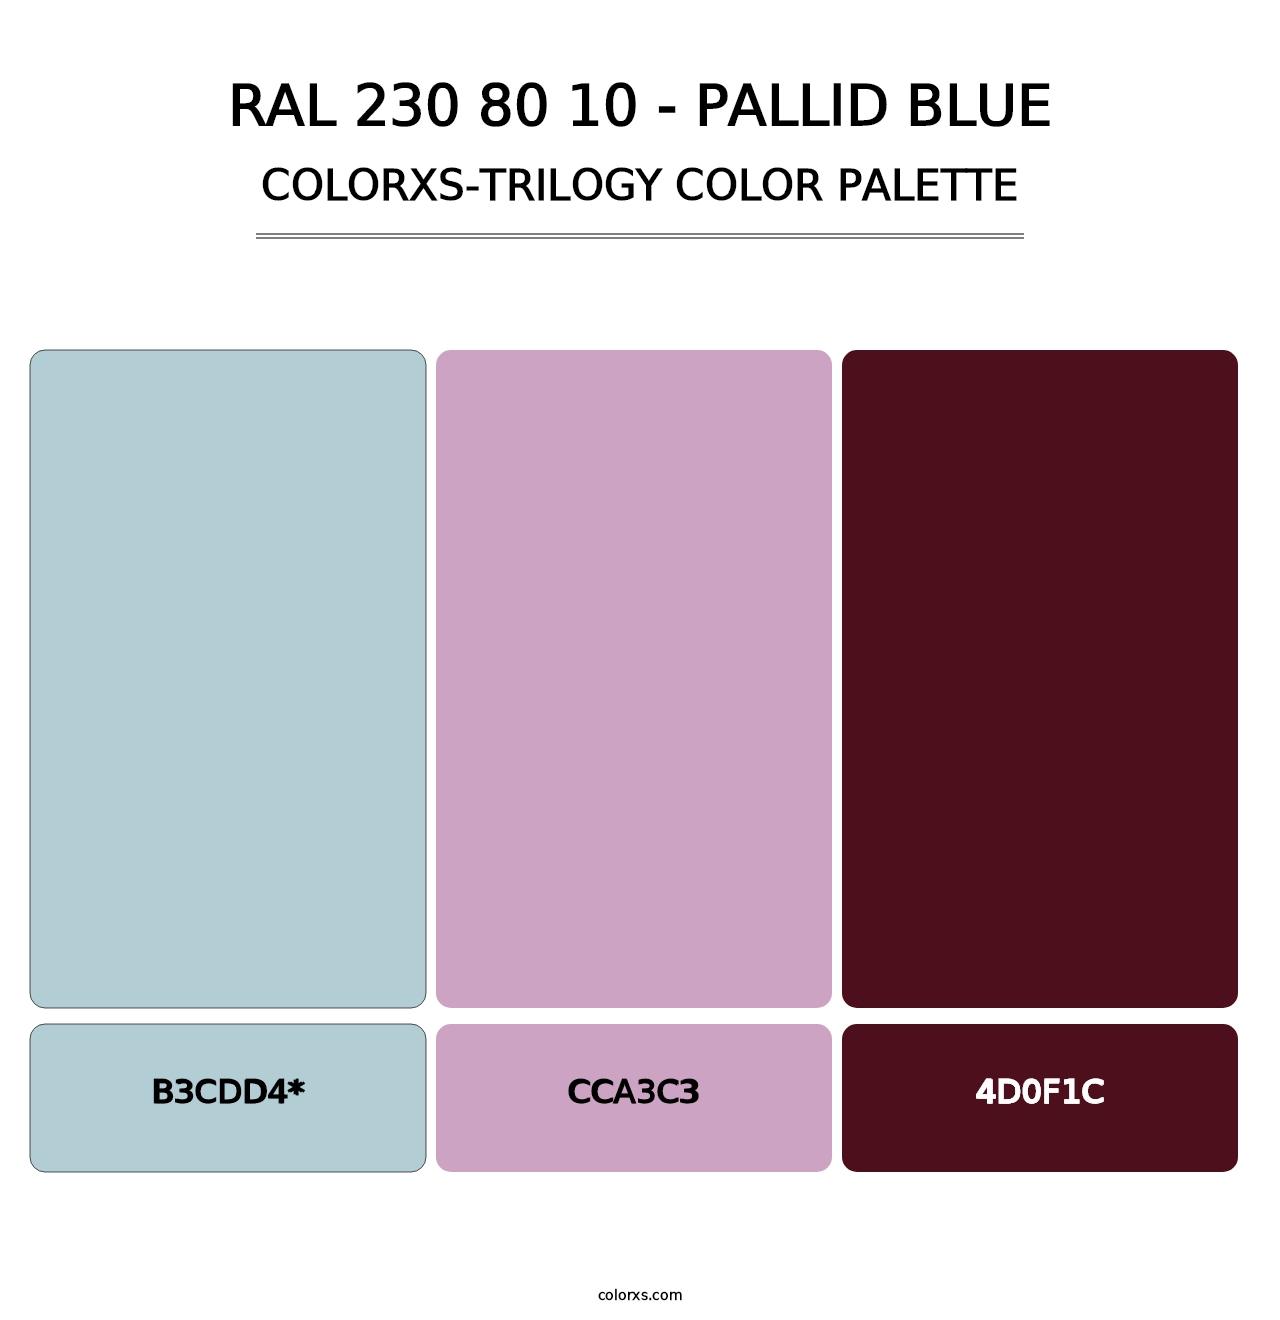 RAL 230 80 10 - Pallid Blue - Colorxs Trilogy Palette